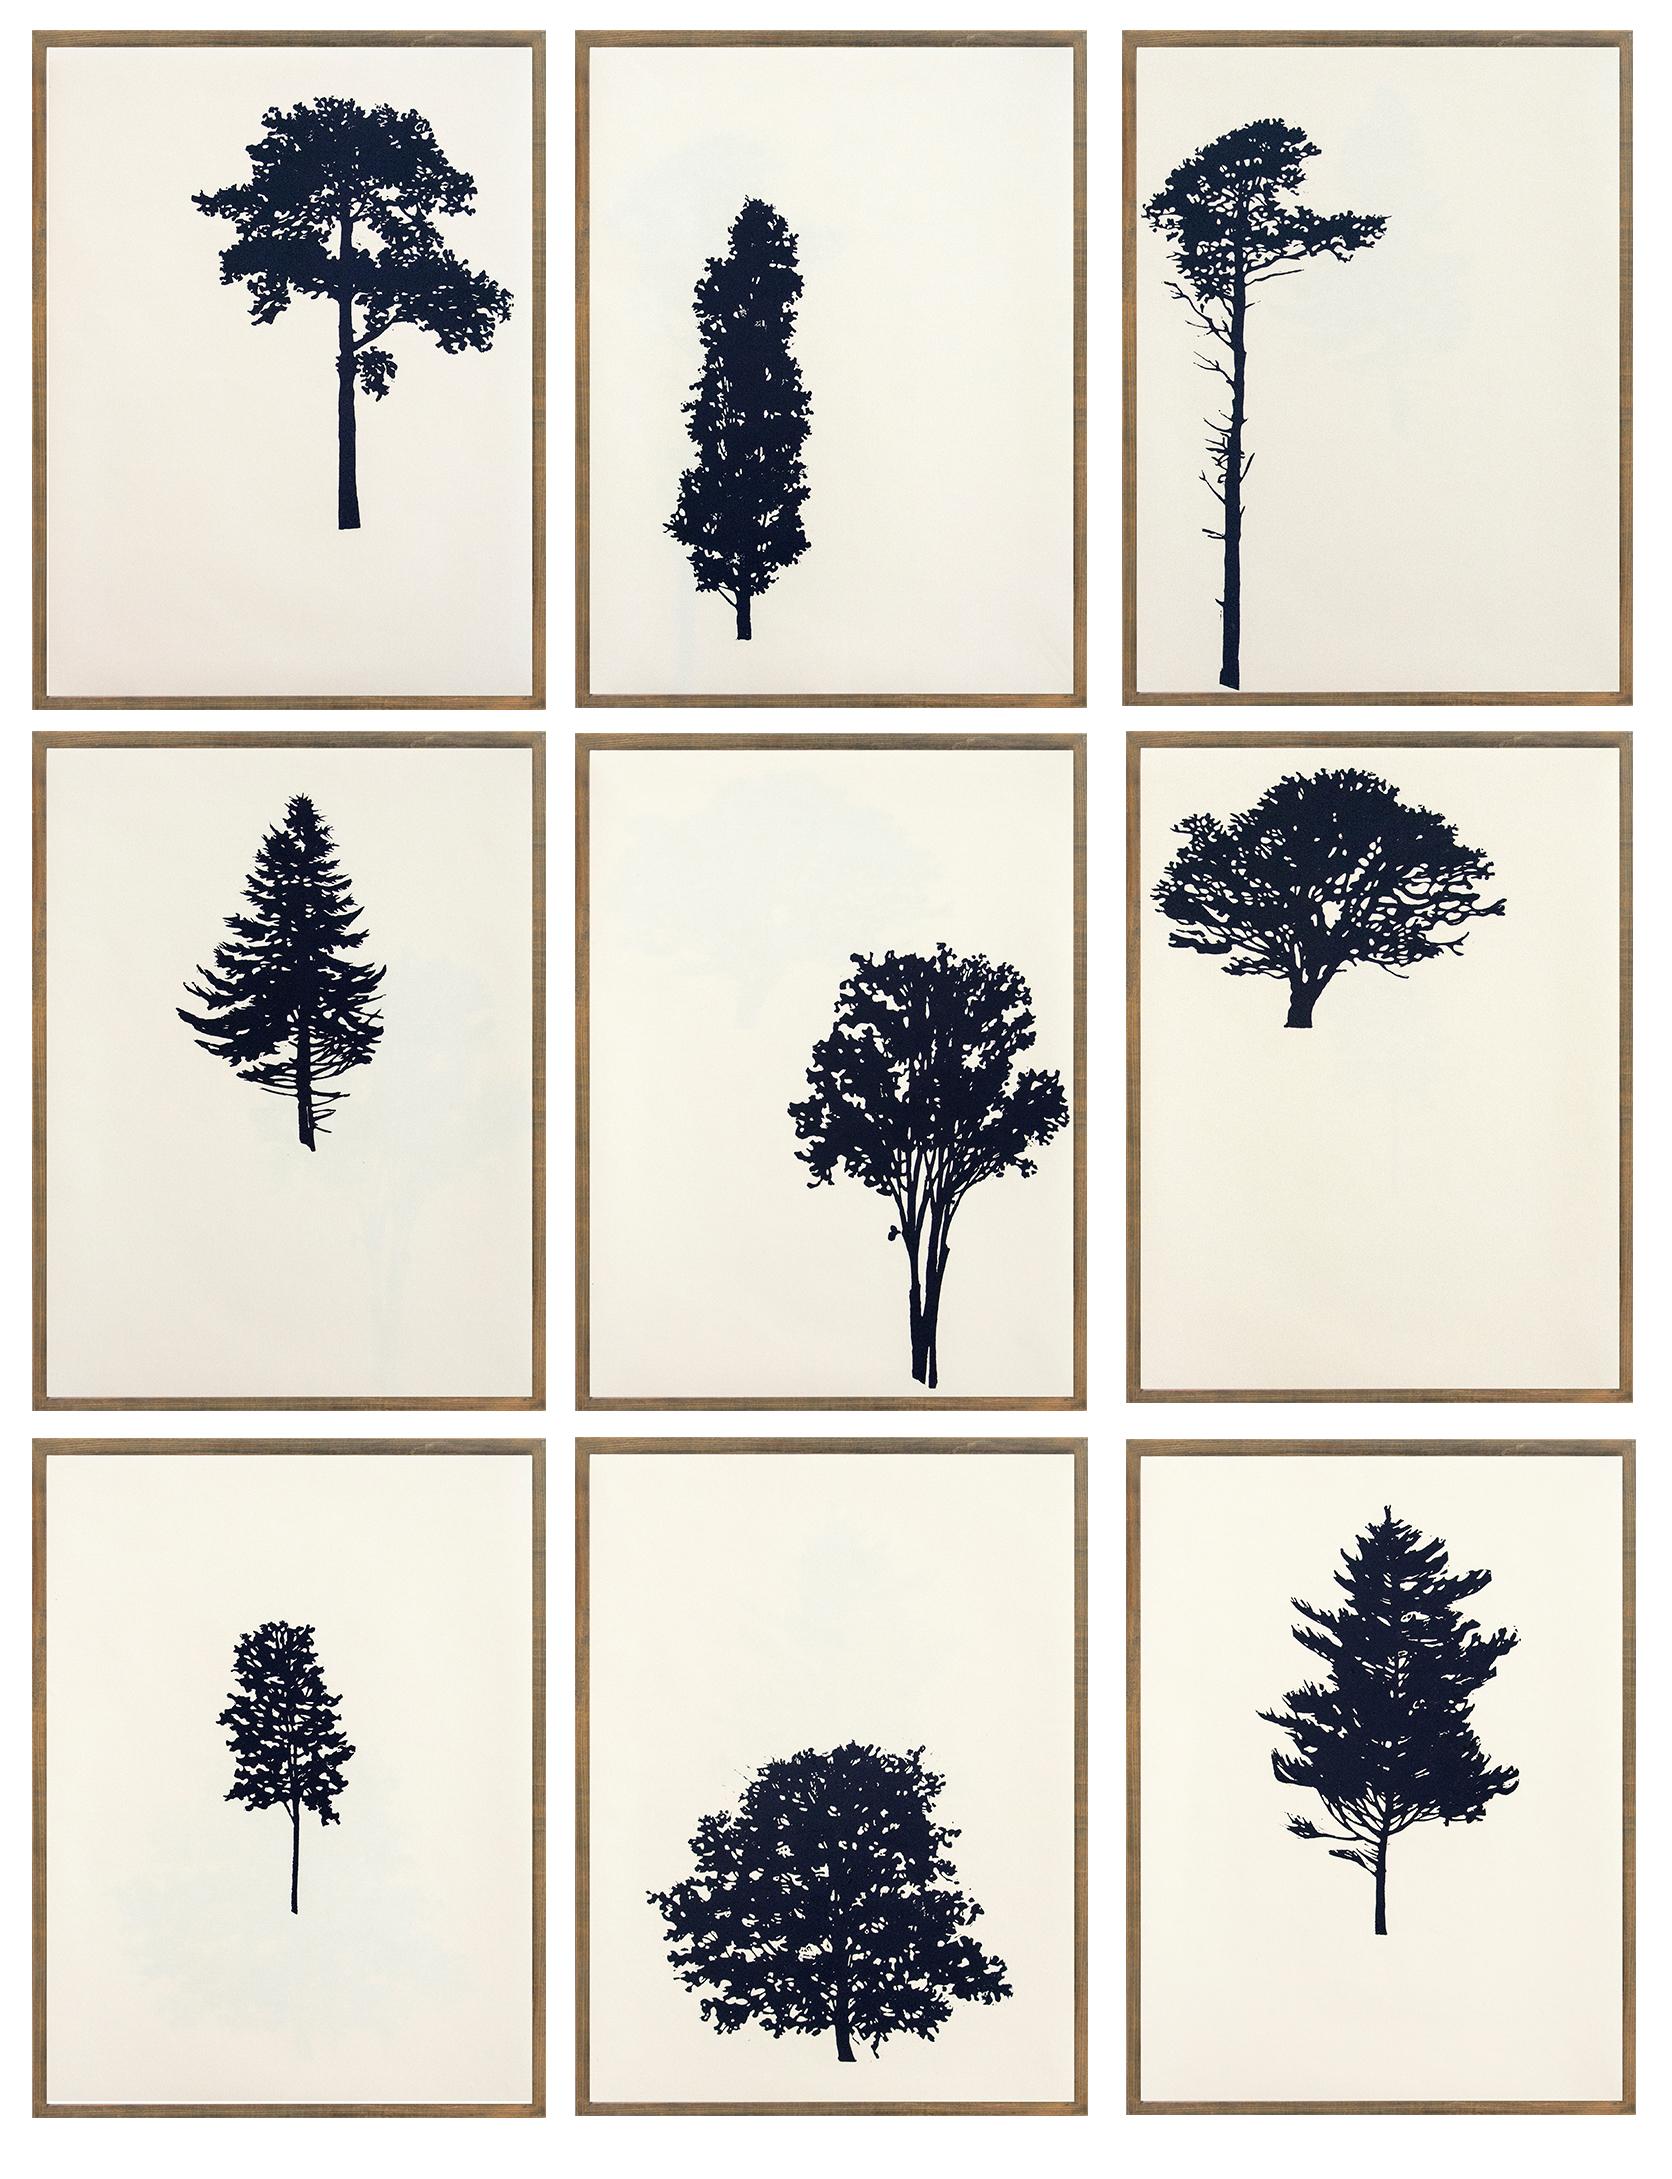 Peter Hoffer Landscape Print - Der Wald  8/12 - portfolio of 9 woodblock prints